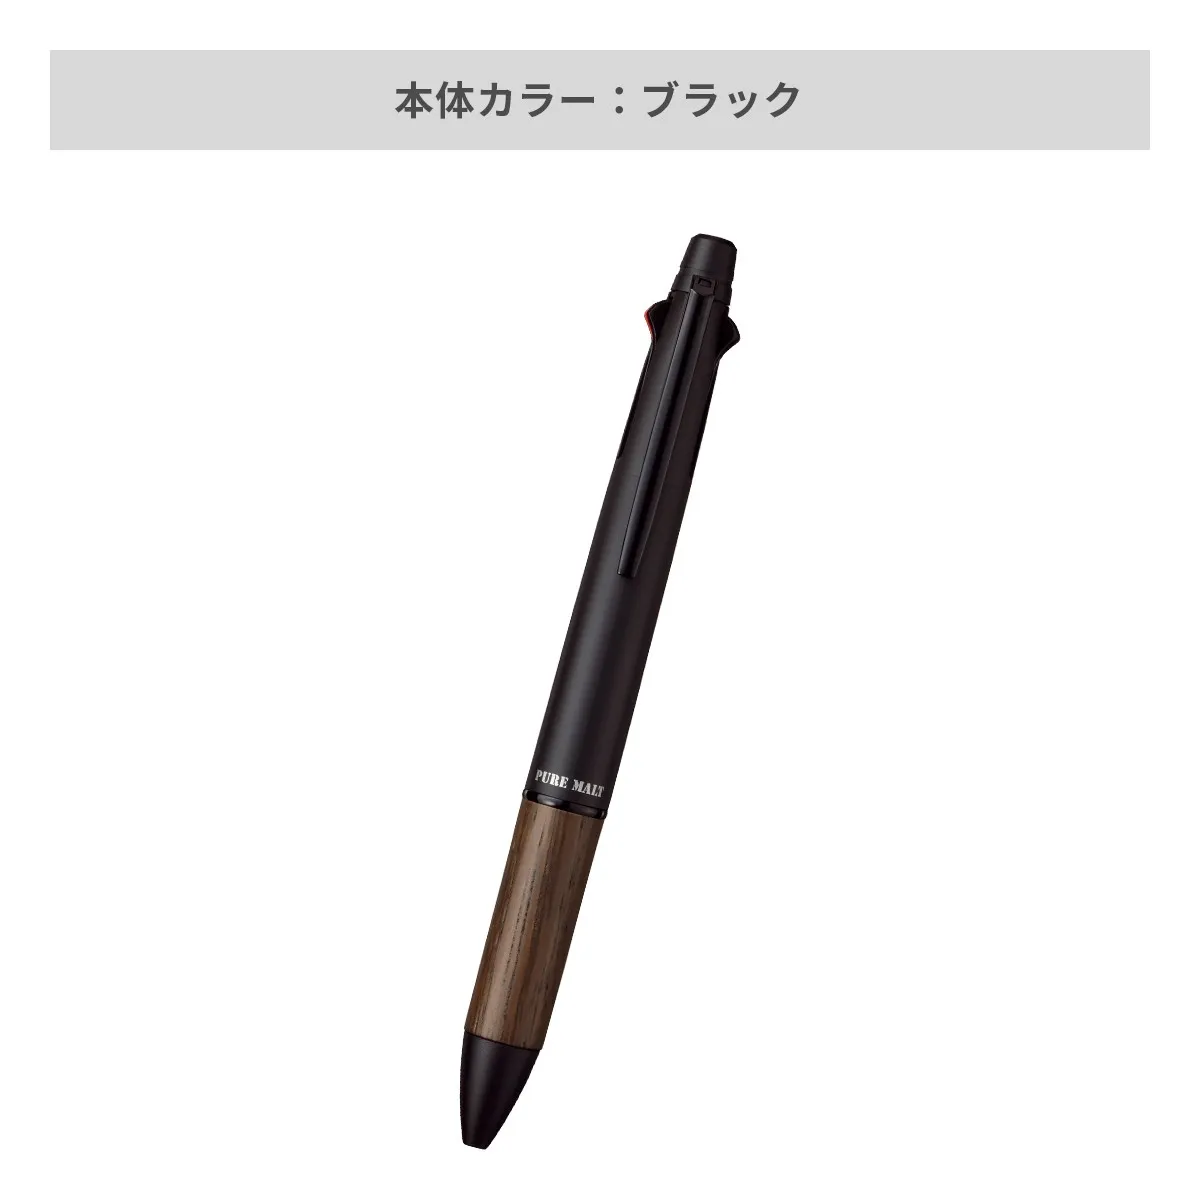 三菱鉛筆 ピュアモルトオークウッド プレミアムエディション 多機能ペン 4&1 0.7mm【多機能ペン / パッド印刷】 画像4